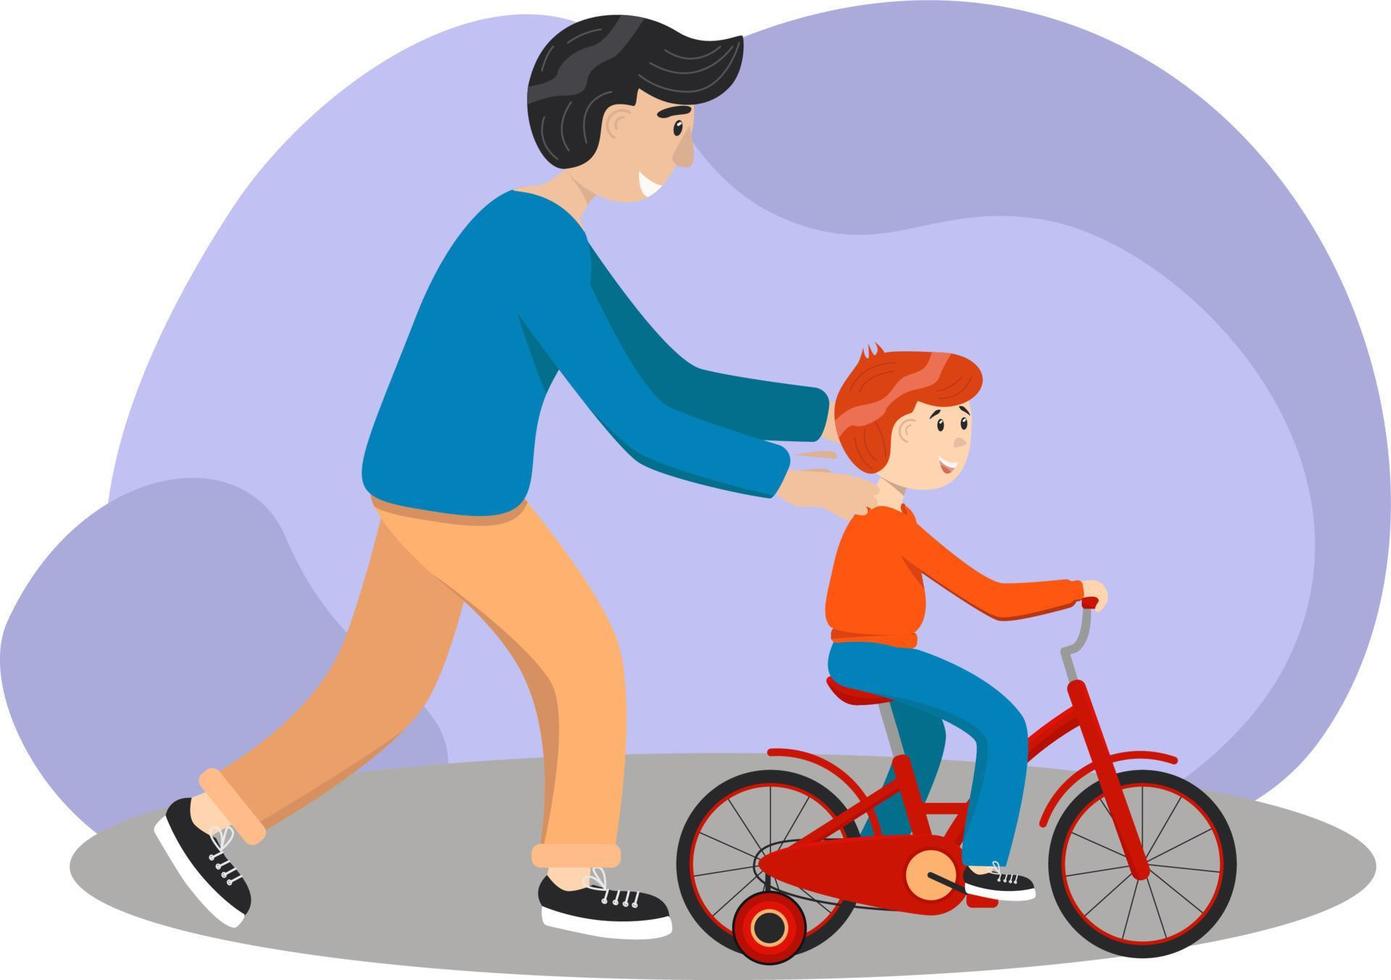 far lär son till rida en cykel. unge lär till rida cykel. föräldraskap begrepp. far hjälp hans pojke unge inlärning till rida en cykel på landsbygden tillsammans. stock vektor illustration, eps 10.